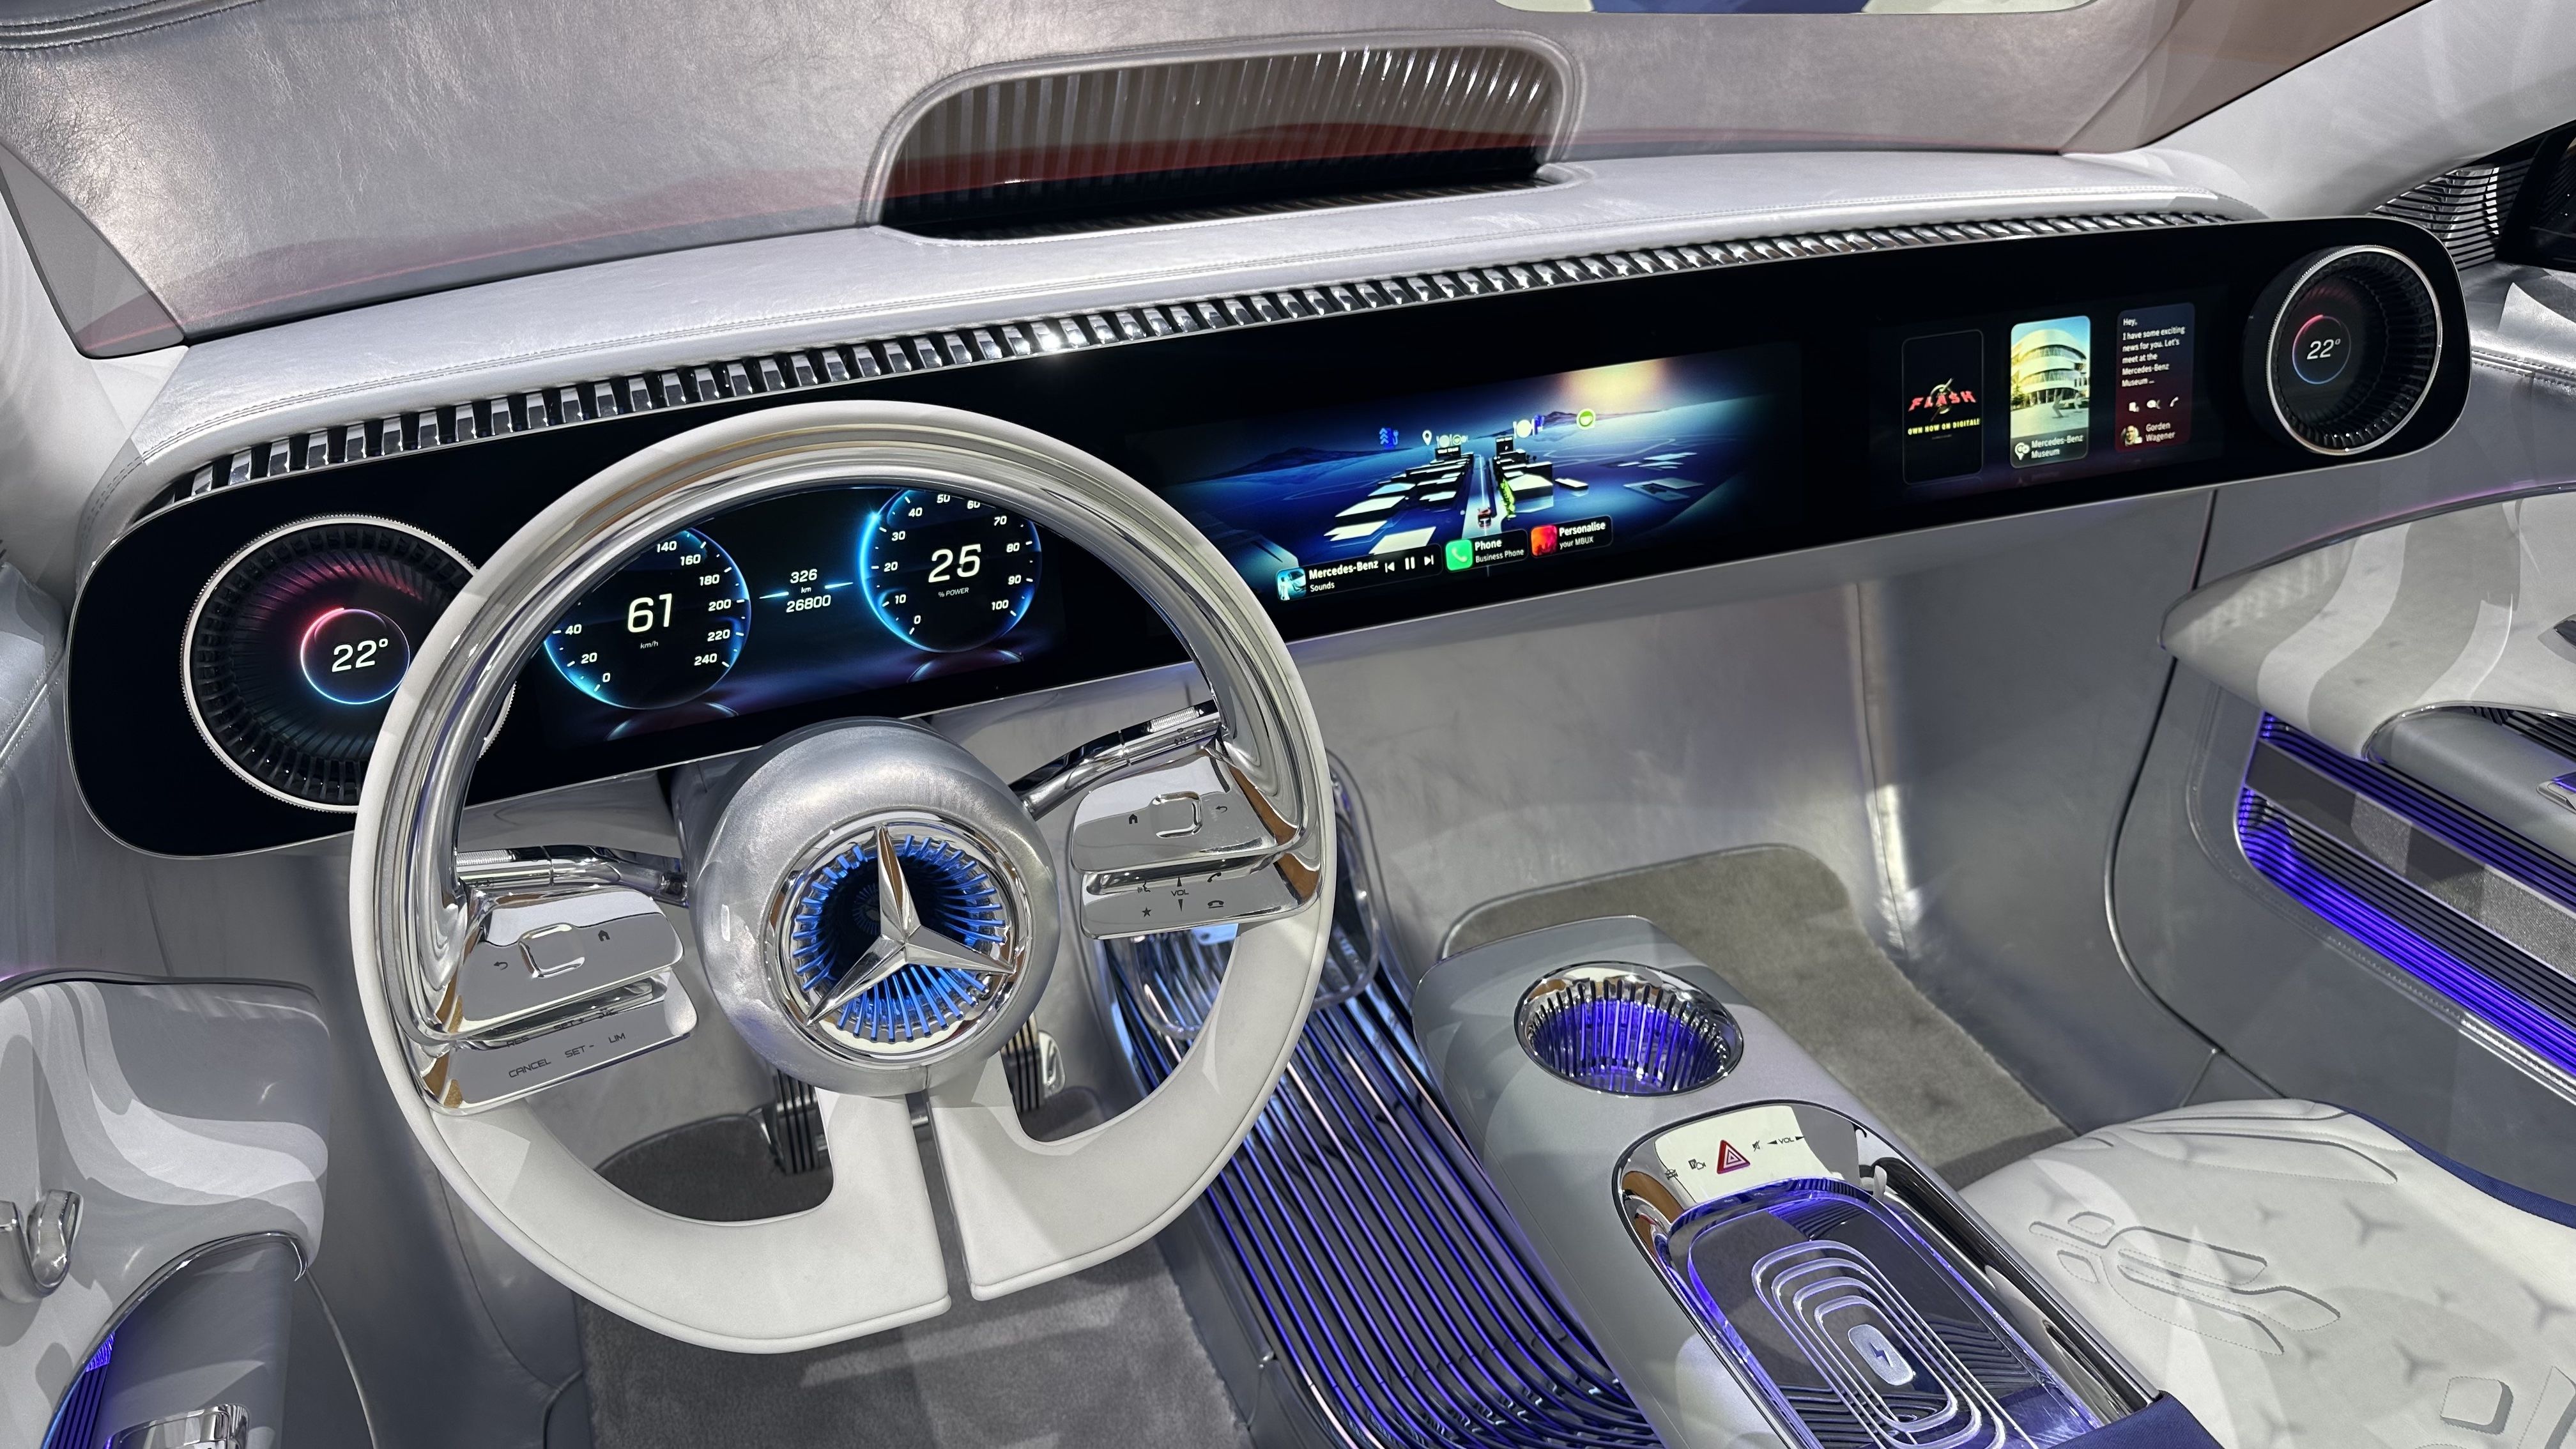 View Photos of the Mercedes-Benz Concept CLA-Class